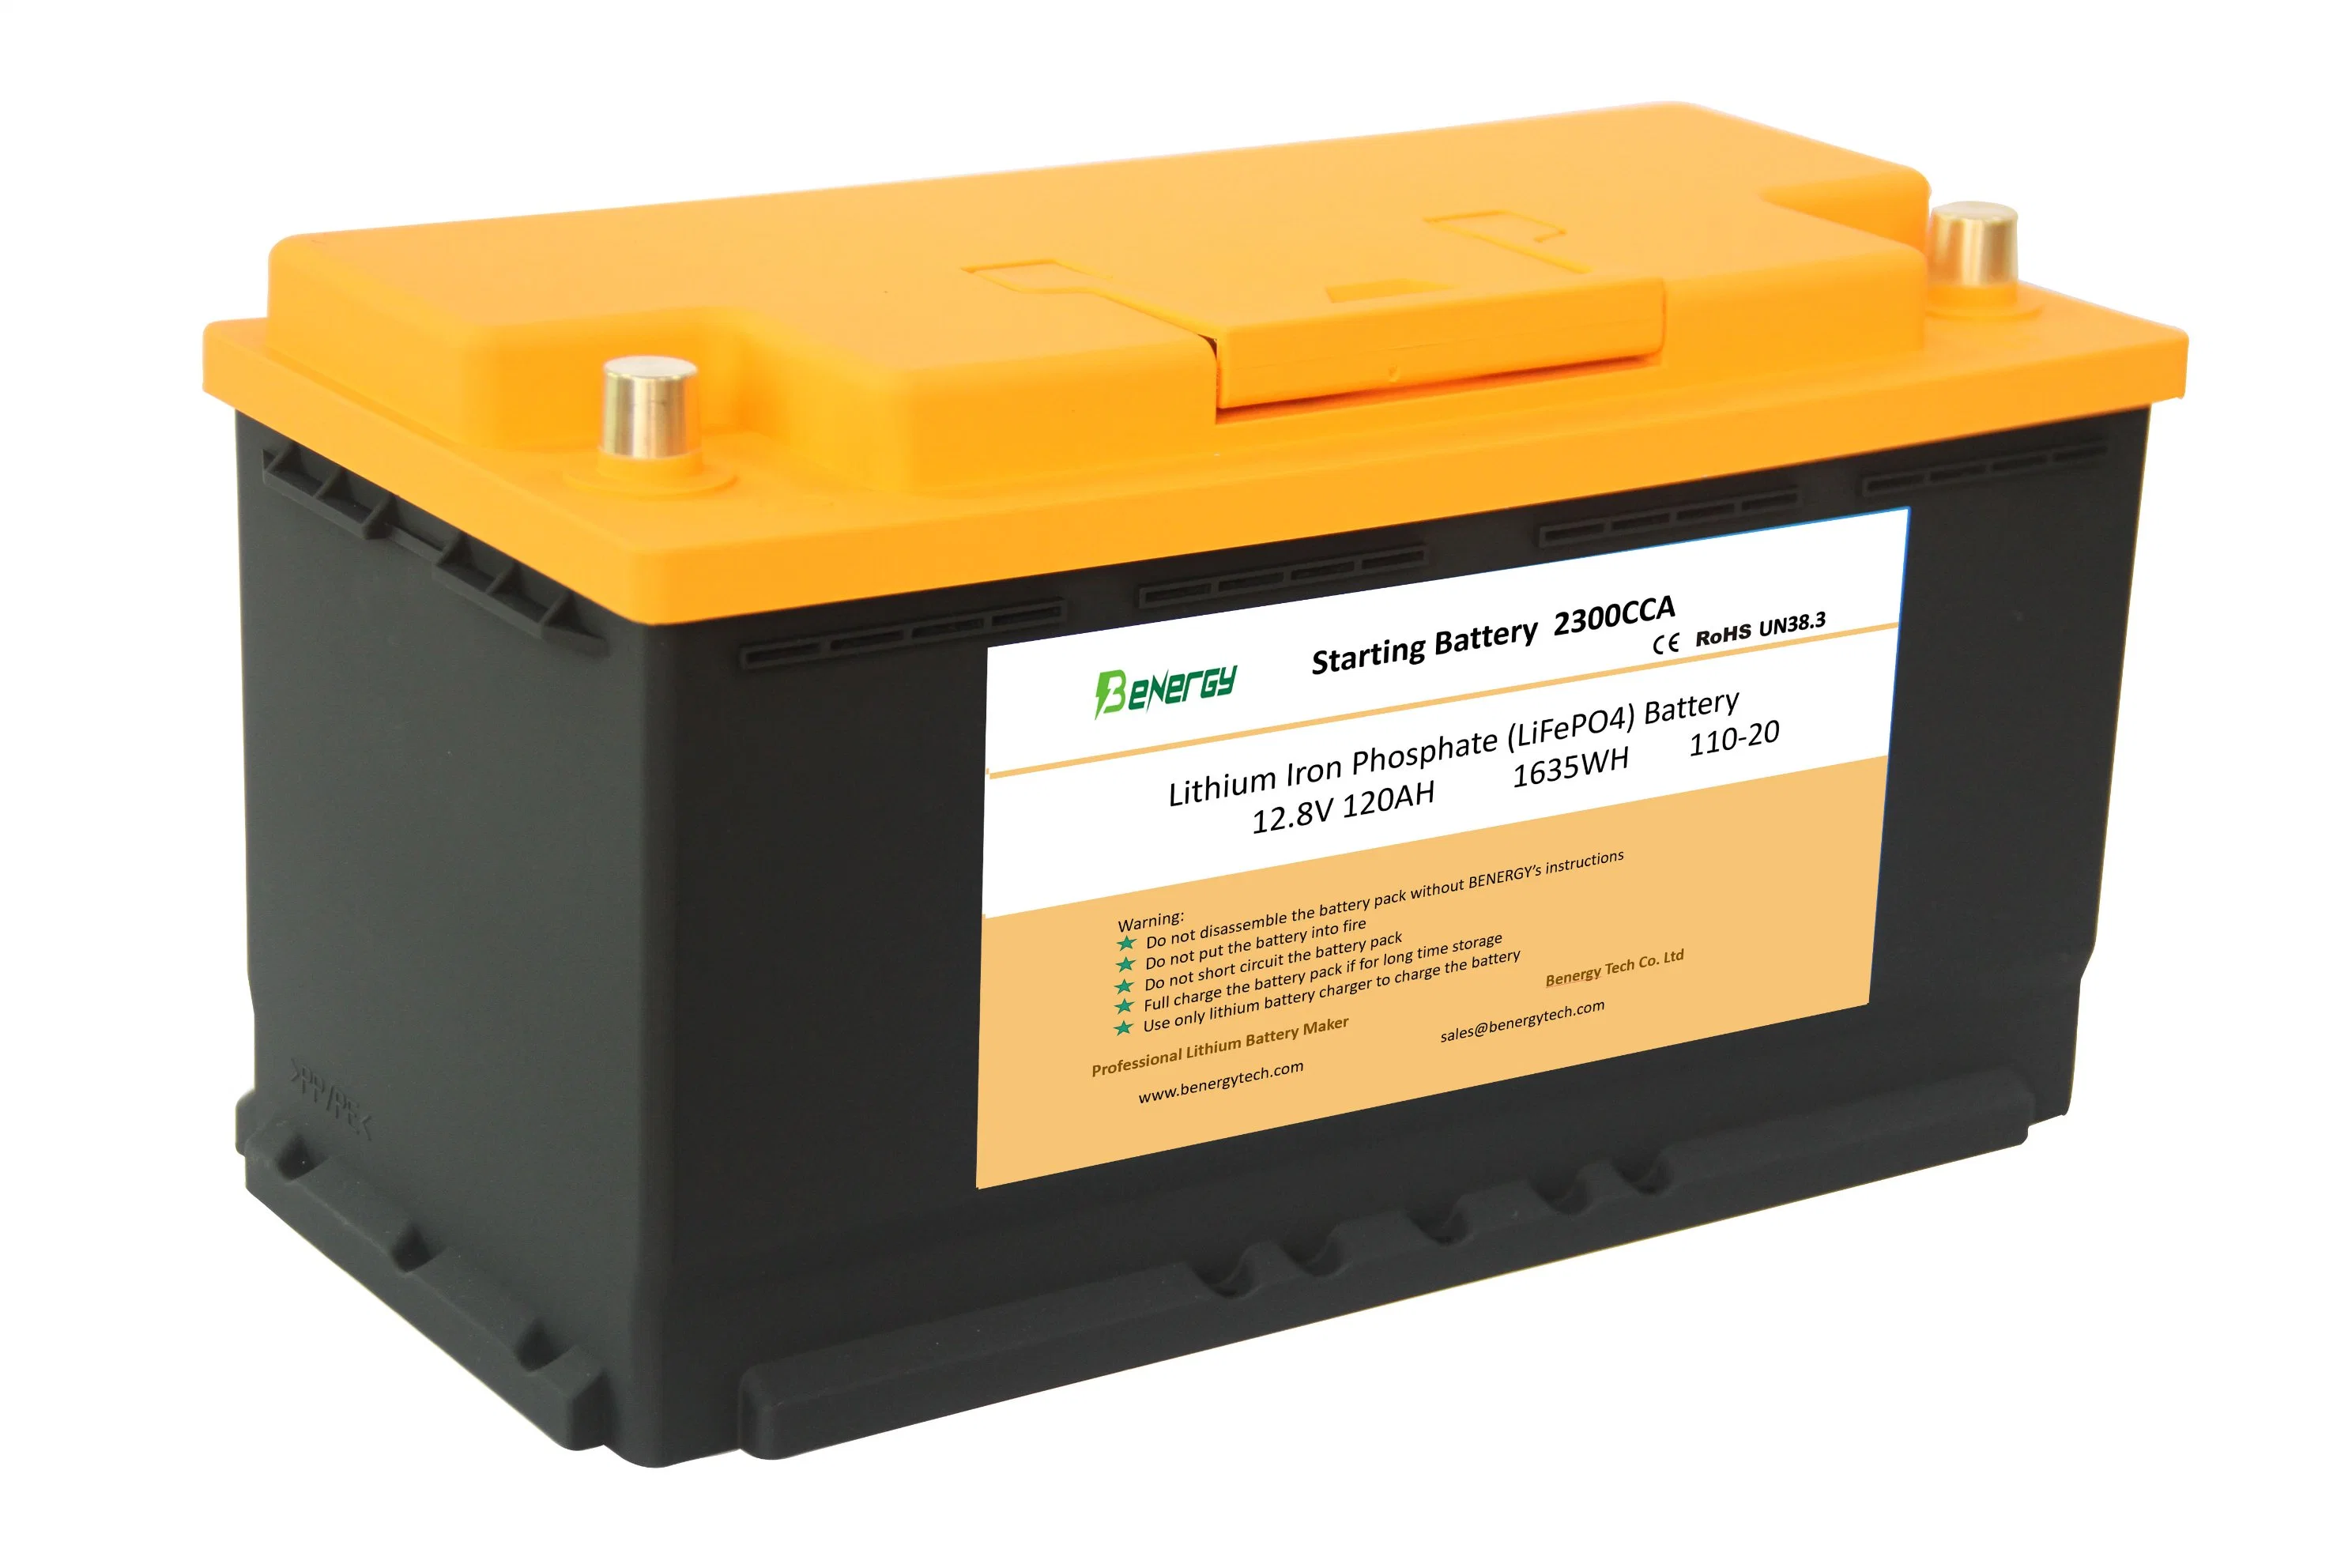 Bateria de arranque recarregável de bateria de bateria de bateria auxiliar de lítio de 120 ah, 12 V, para automóvel